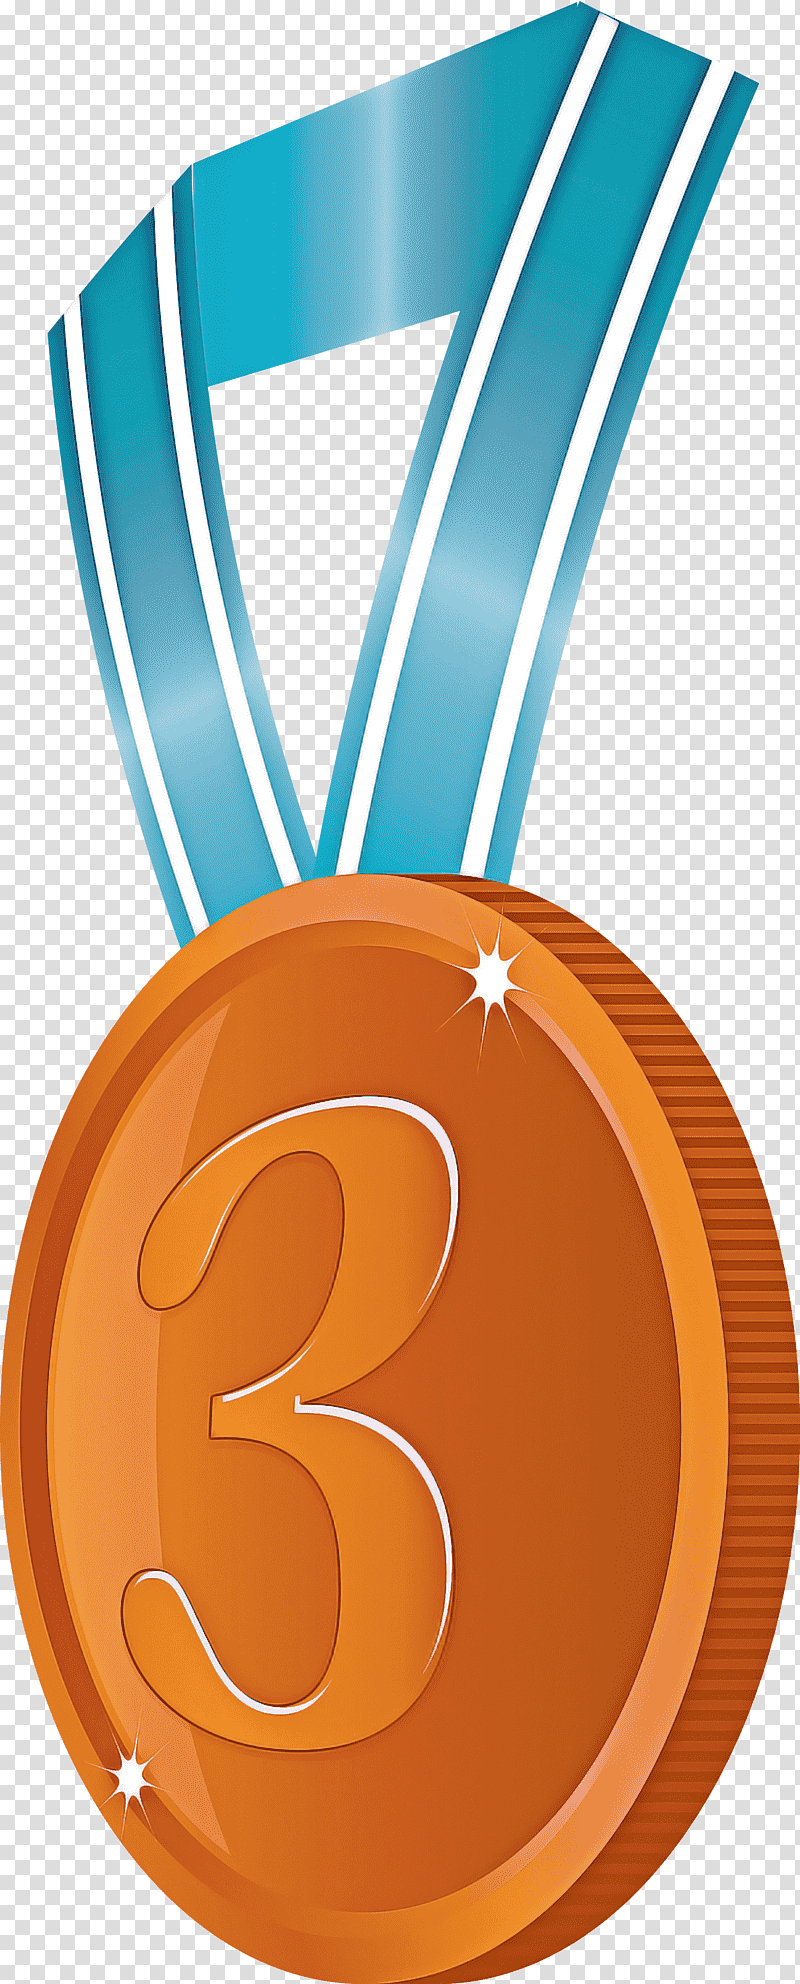 Brozen Badge Award Badge, Logo, Symbol, Medal, Text, Cobalt Blue, Magenta transparent background PNG clipart